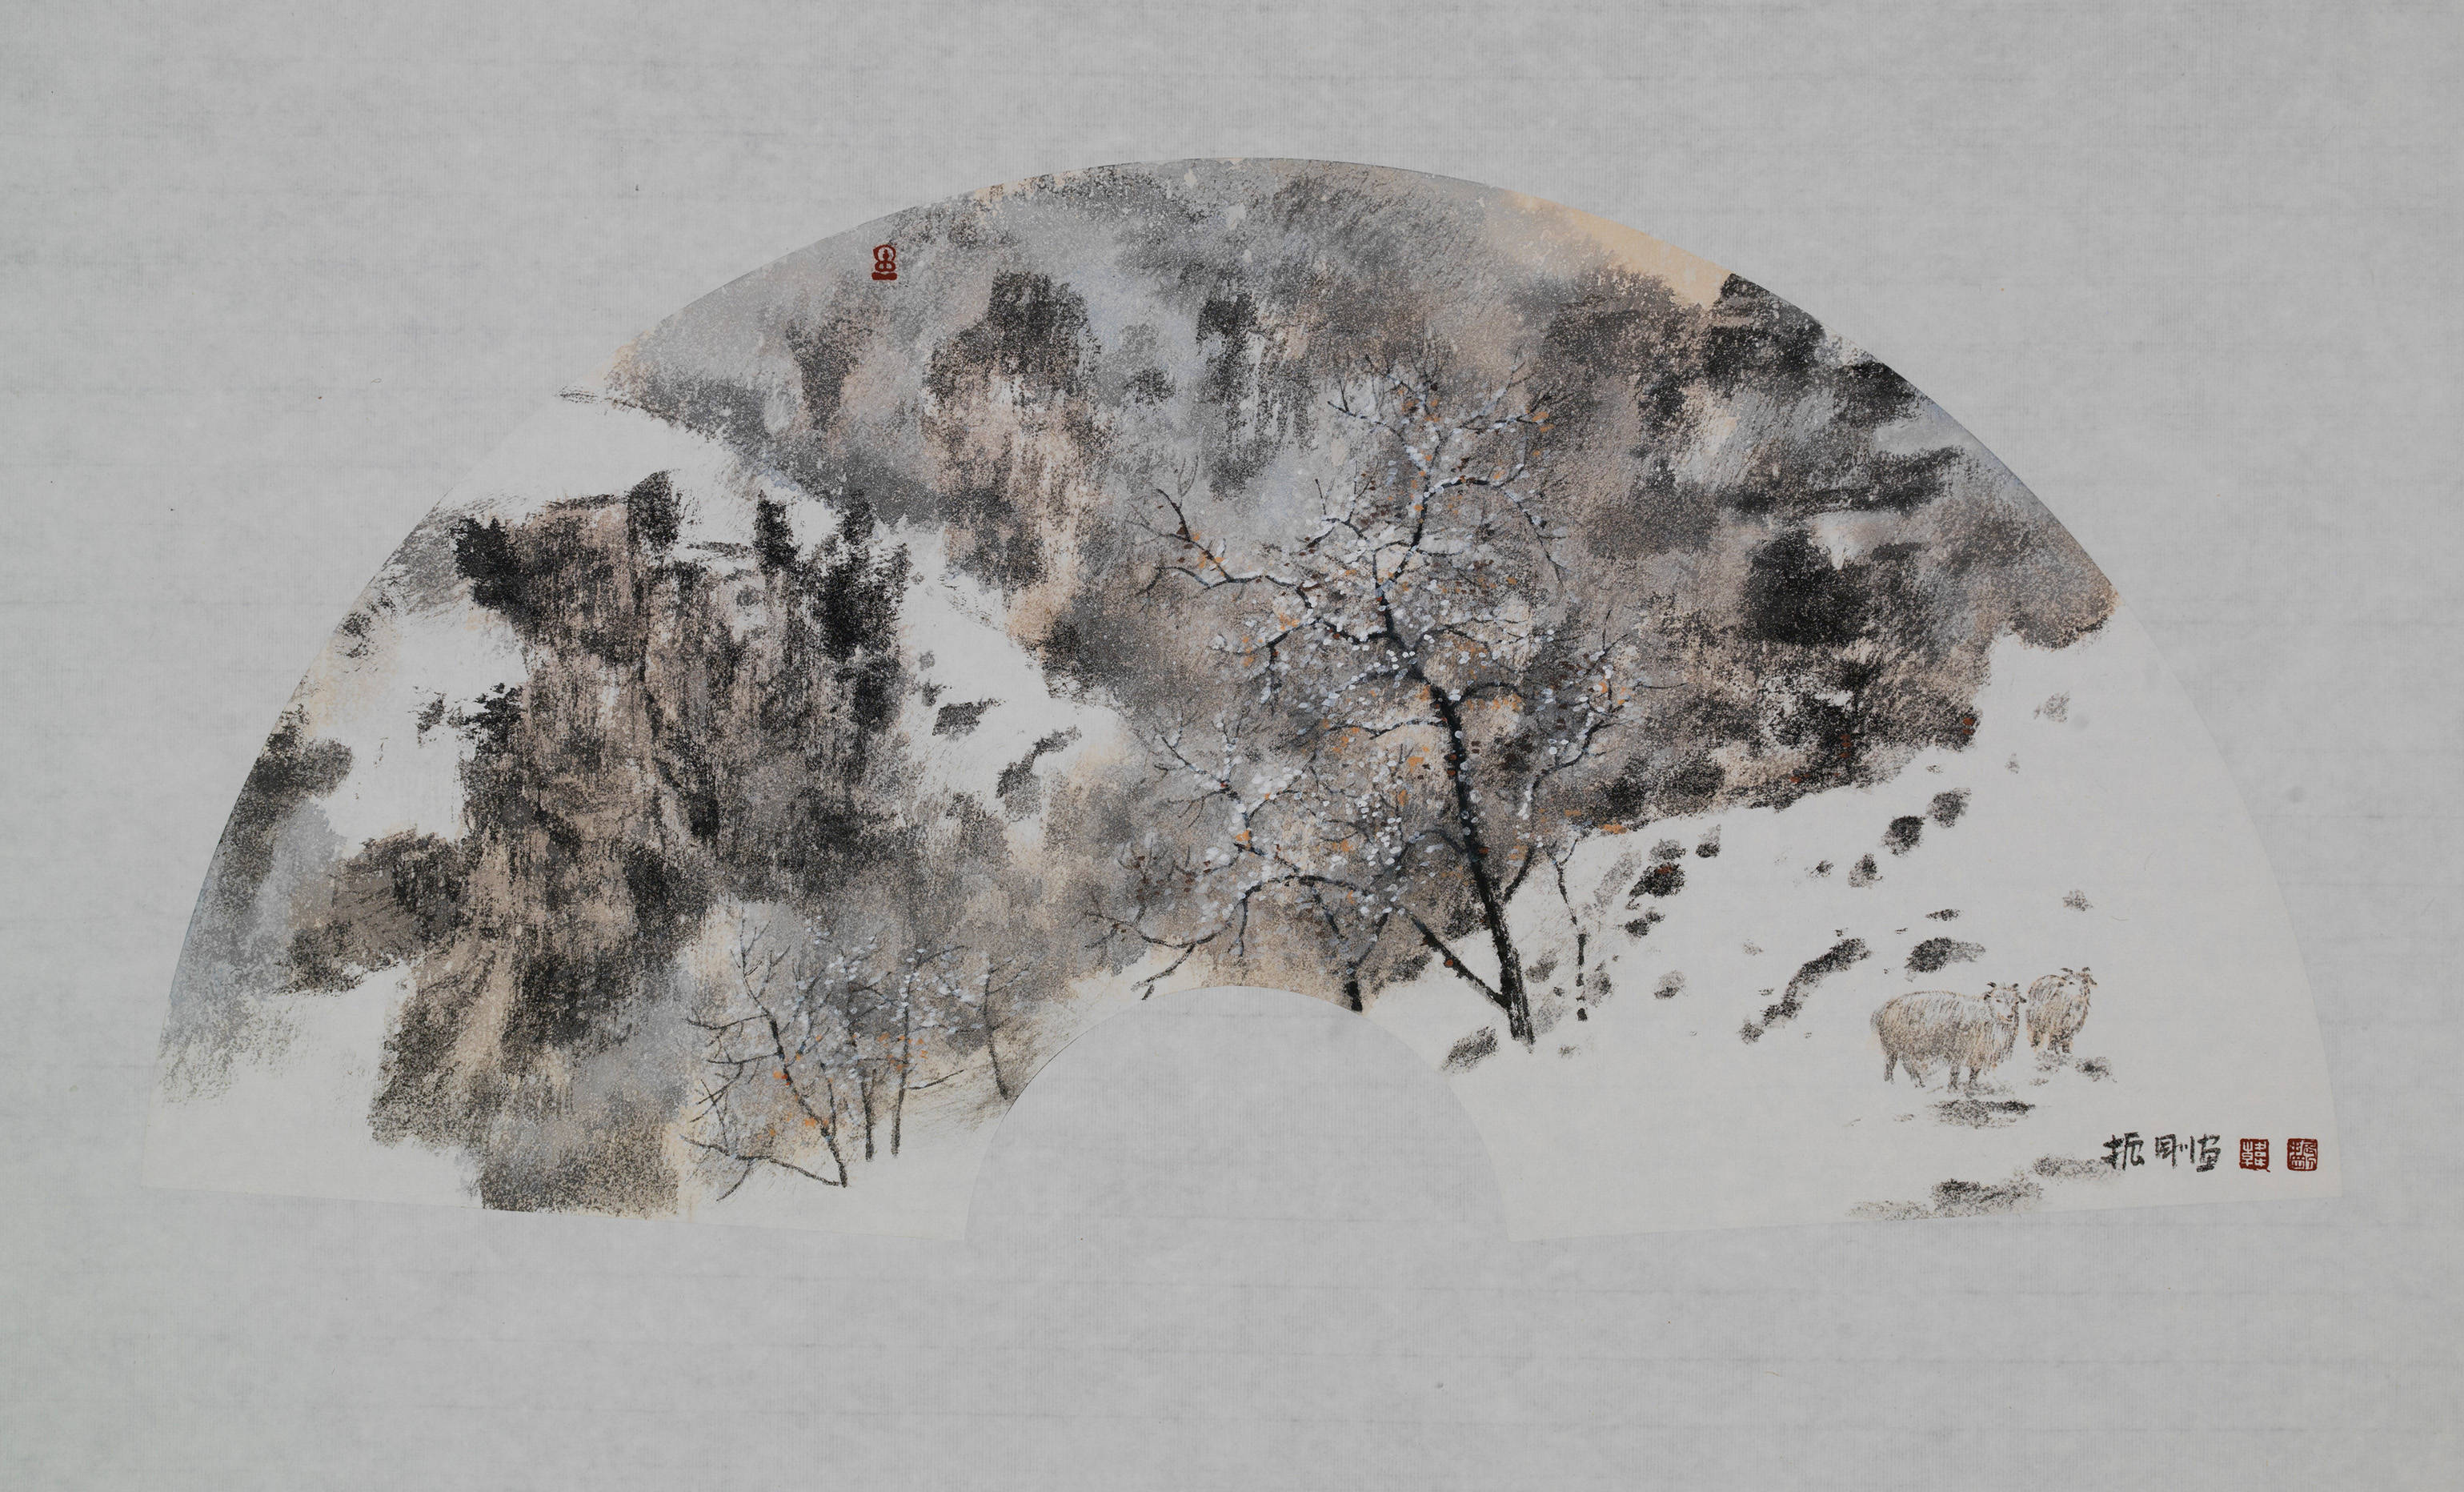 韩振刚的雪景山水多取材于京郊或甘南,他不仅写眼前雪景的自然样貌,还